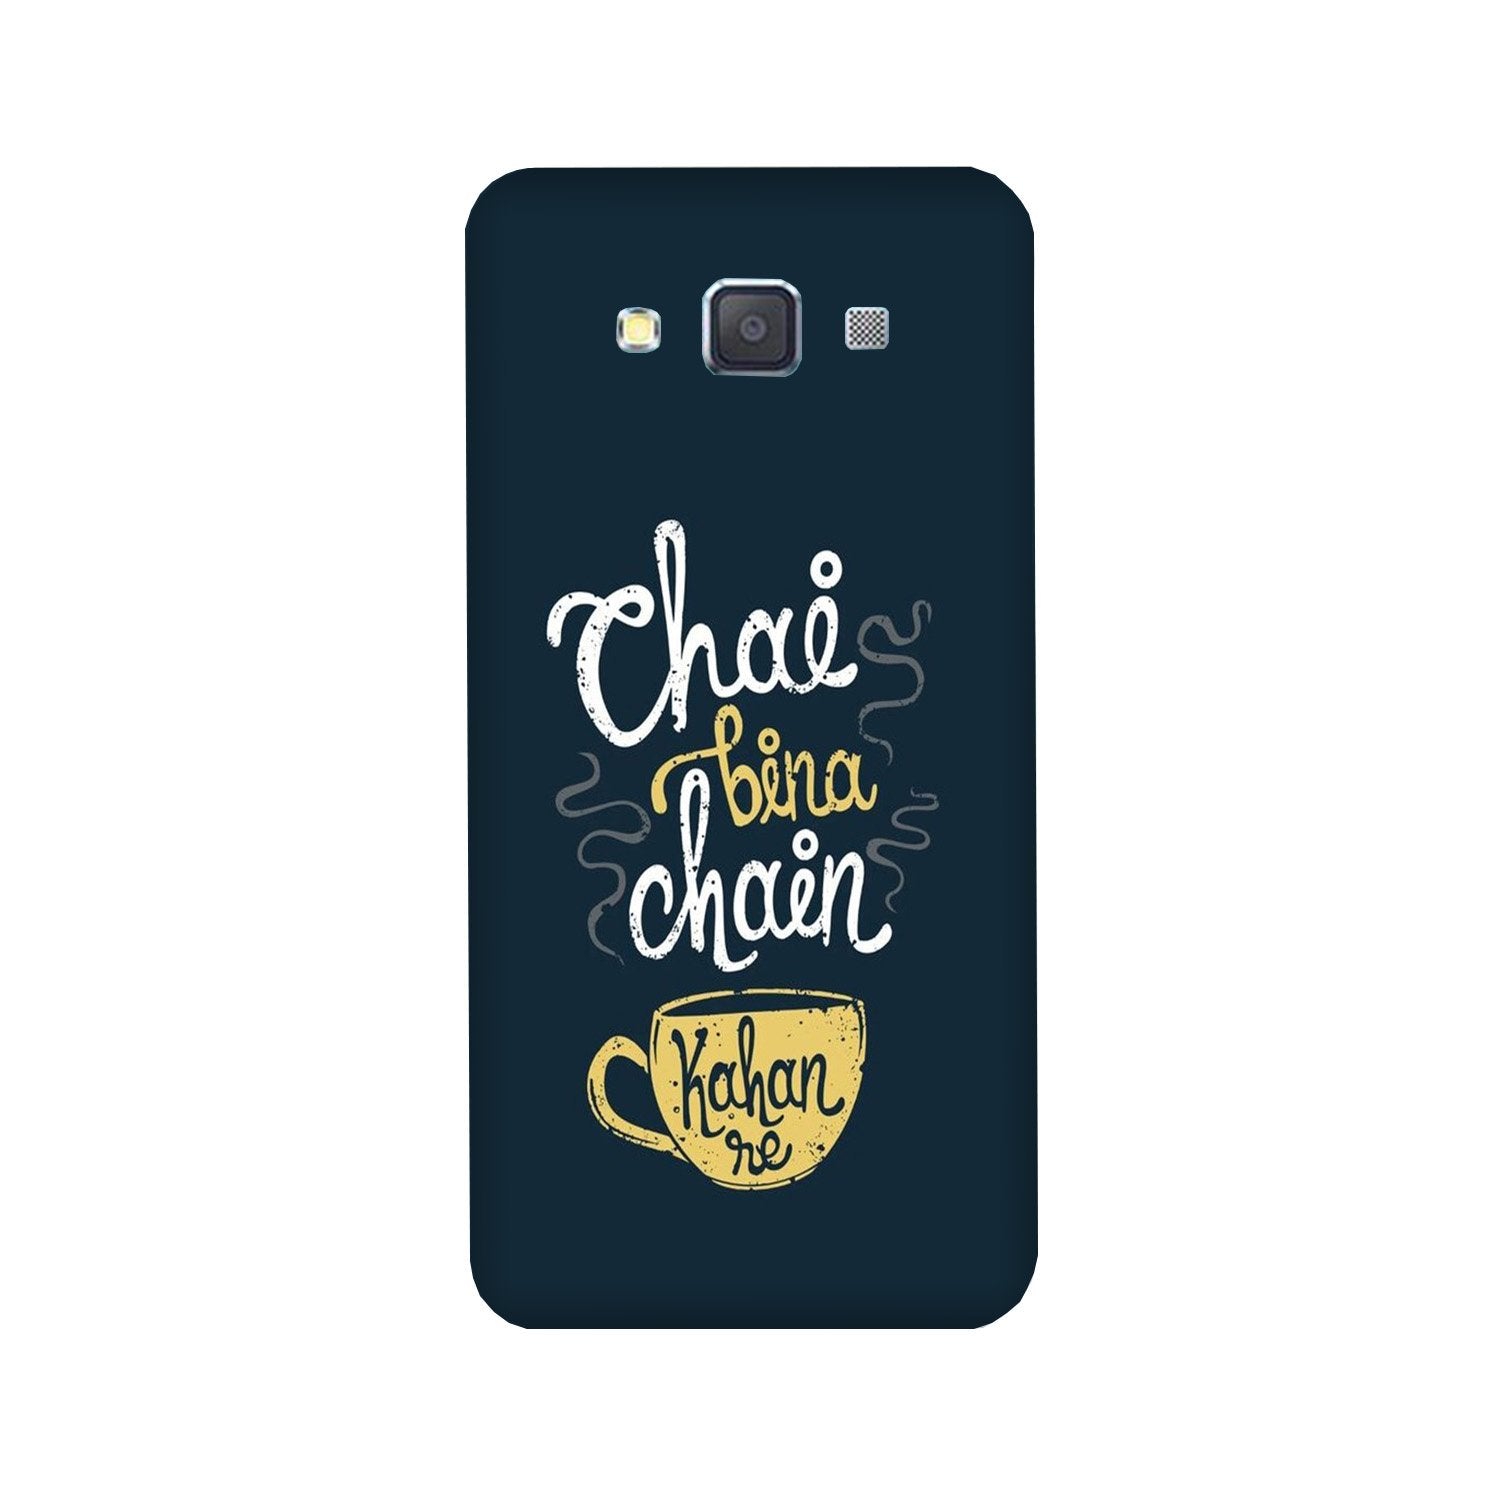 Chai Bina Chain Kahan Case for Galaxy Grand Max  (Design - 144)